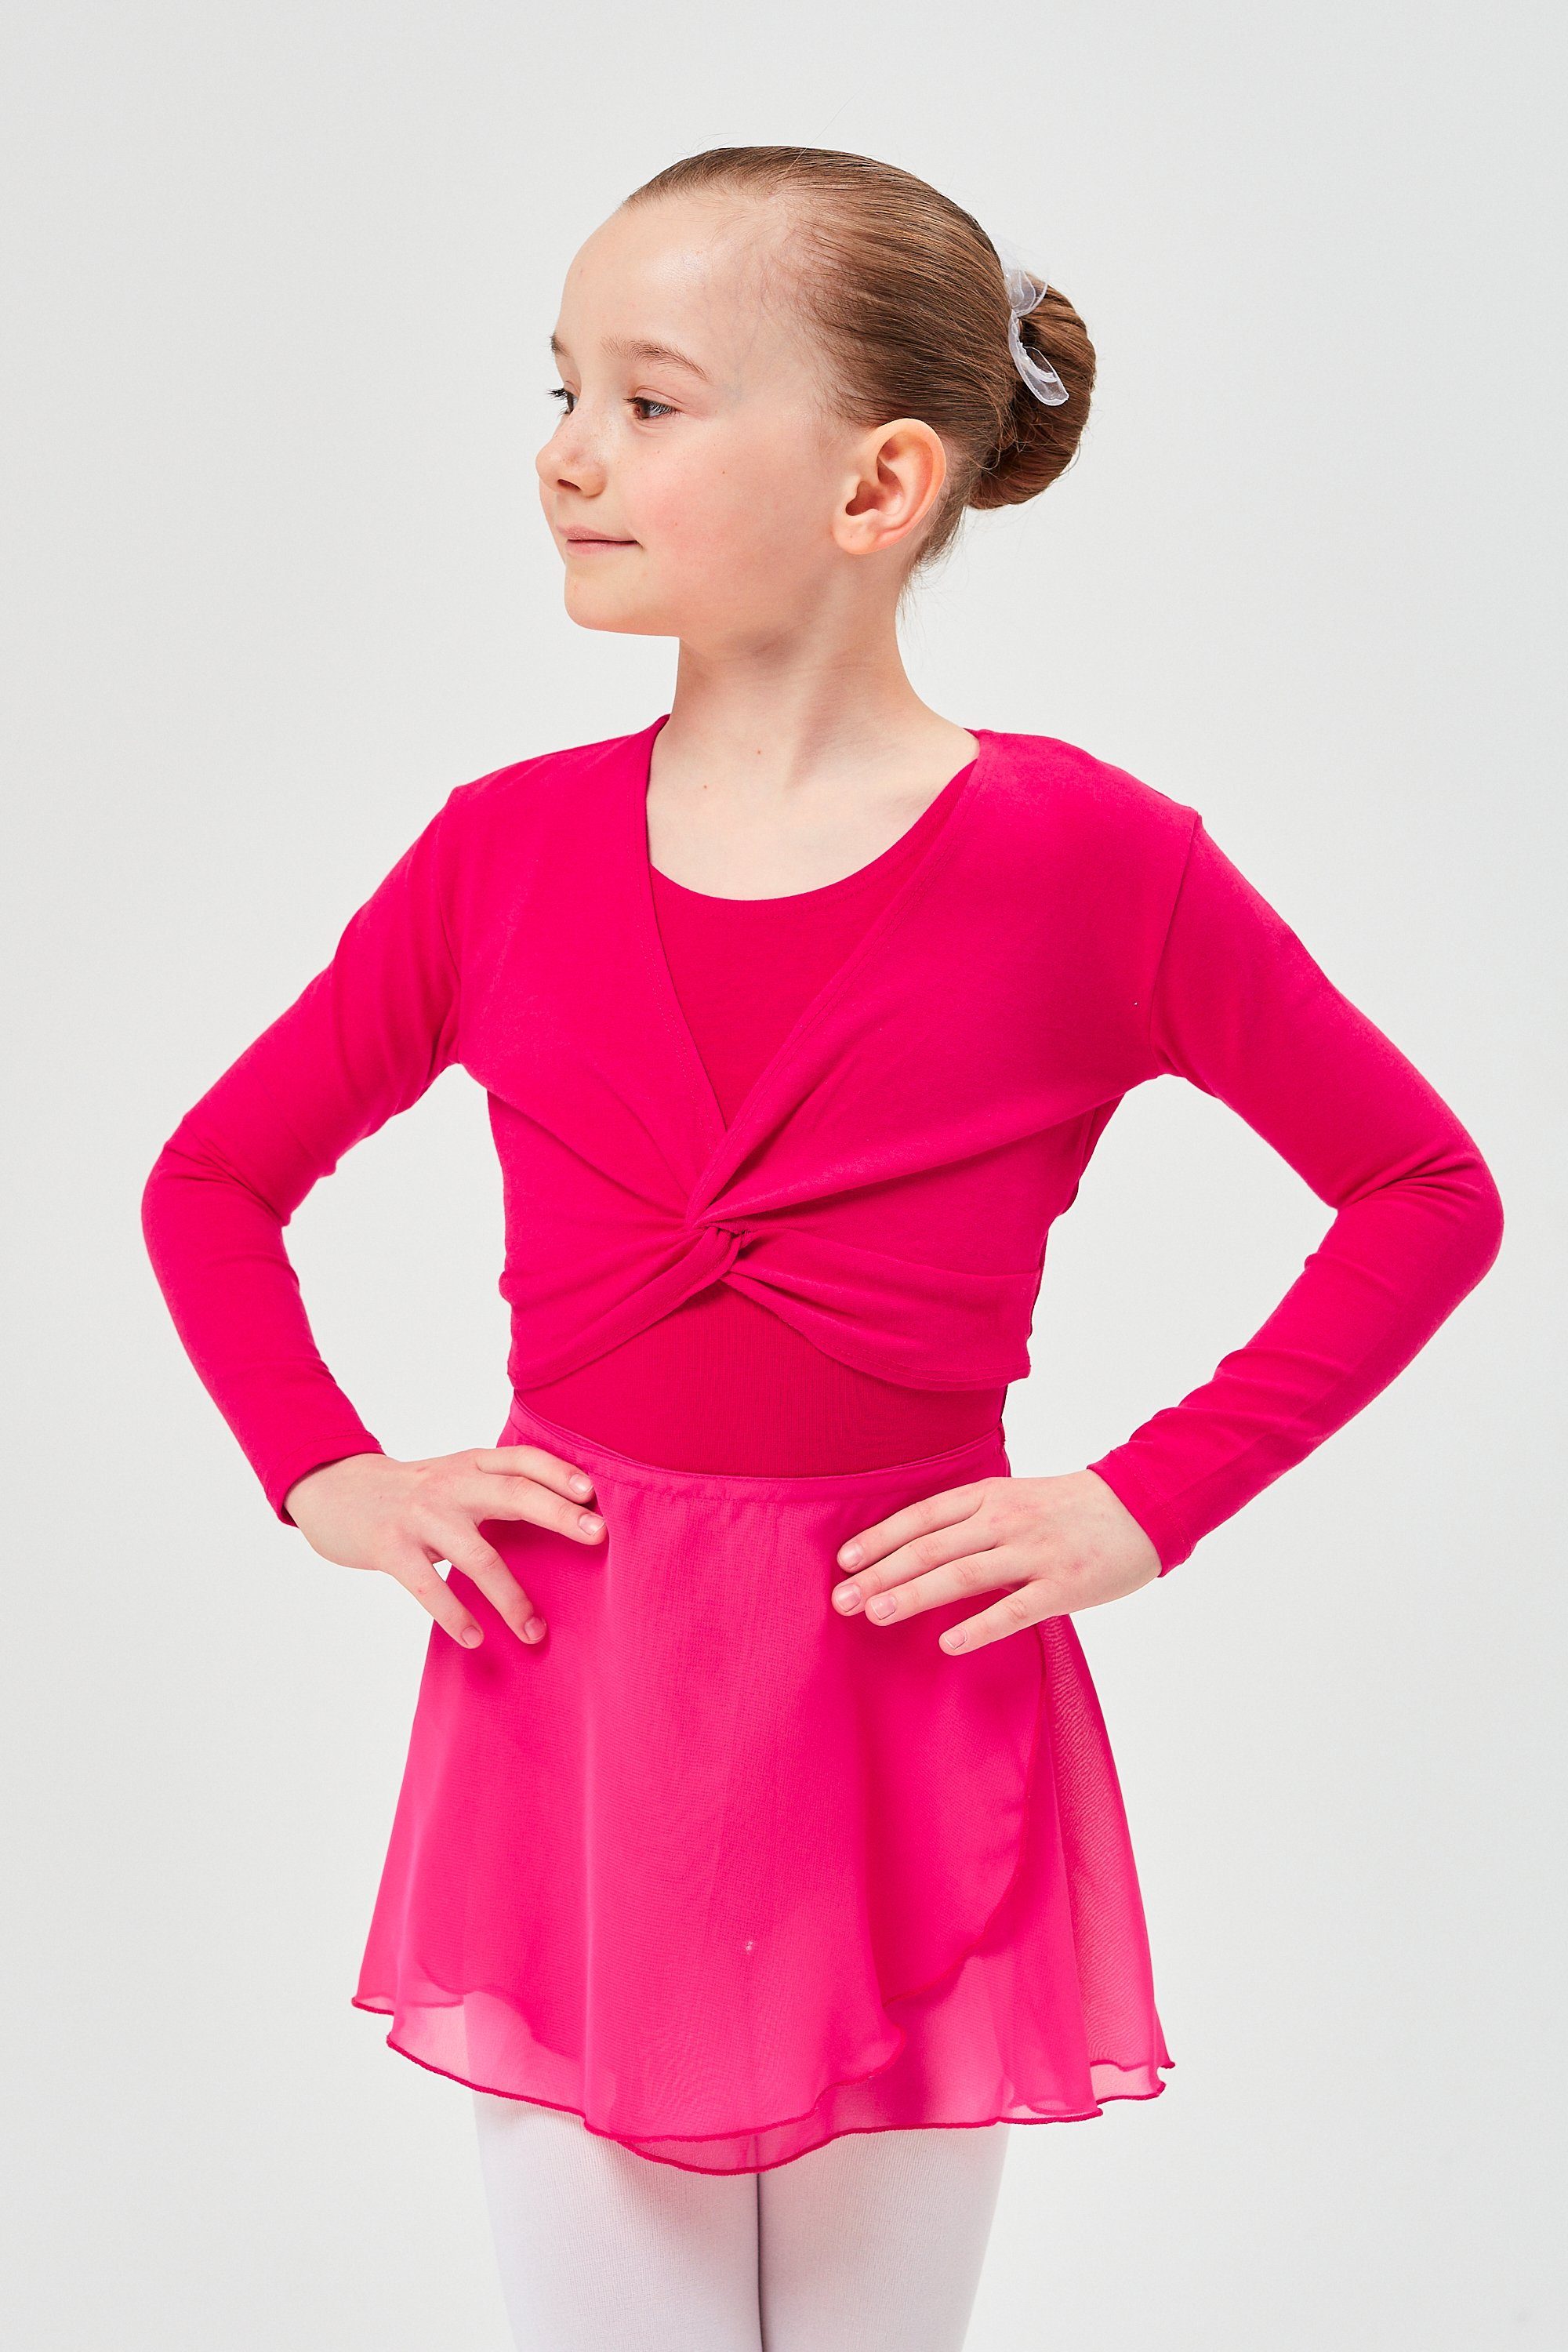 tanzmuster Crop-Top Langarm Mia Top aus wunderbar fürs für Ballett Kinder Mädchen weicher Baumwolle Ballett pink Oberteil